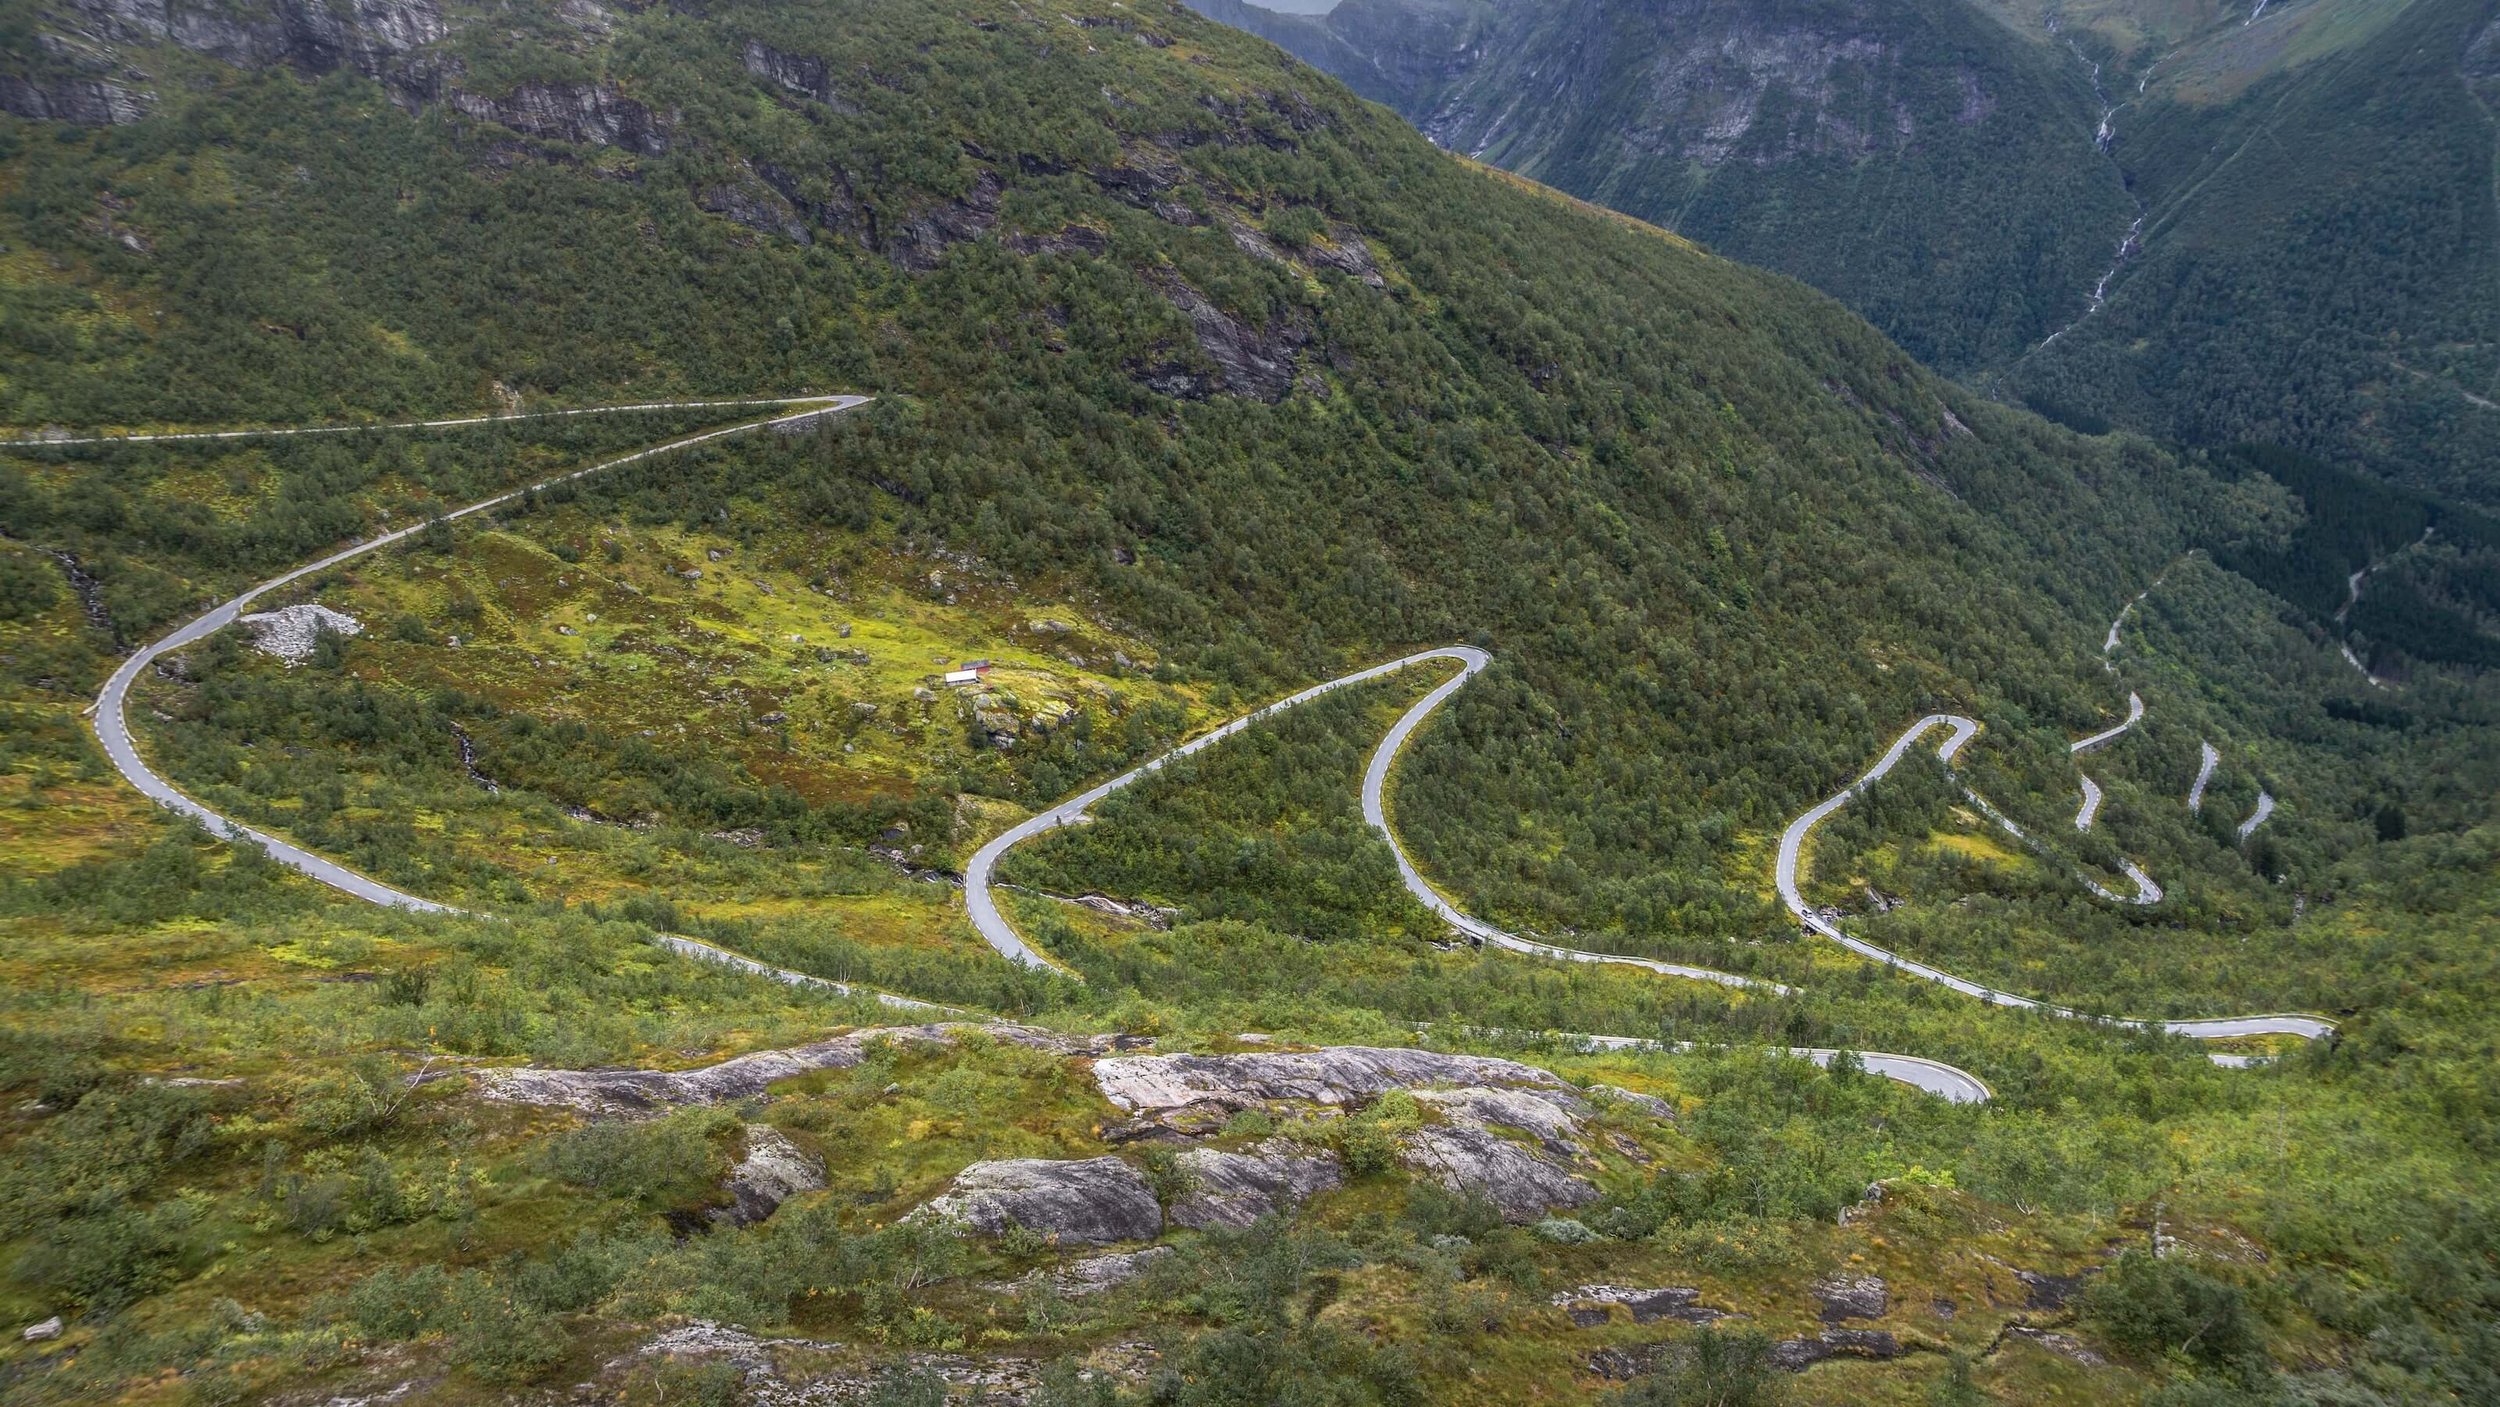 Bårddalen / Trine Kanter Zerwekh / Norwegian Public Roads Administration